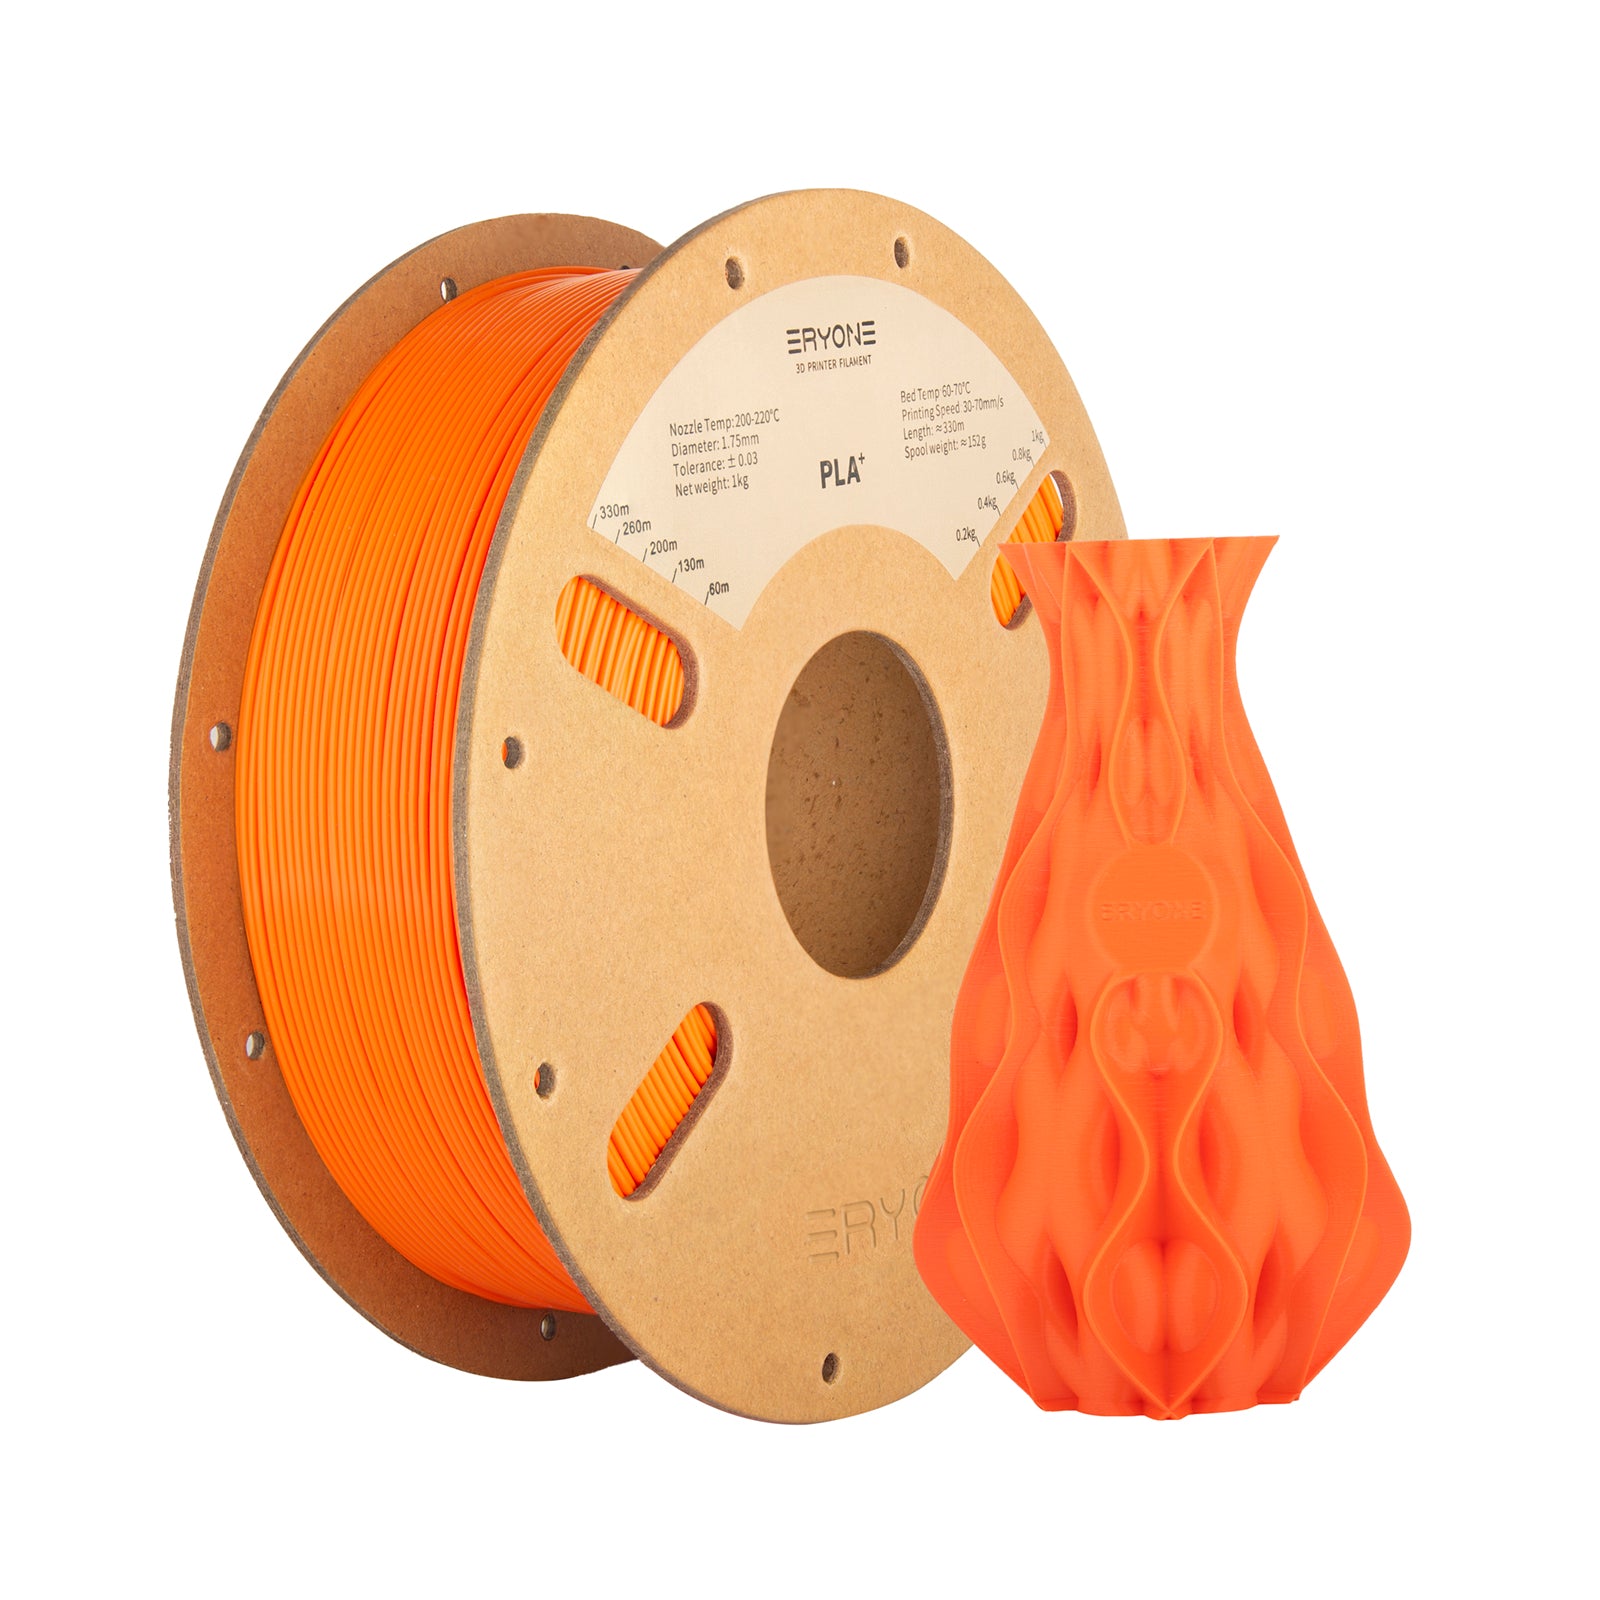 Filament PLA mat ERYONE pour 3D Imprimante